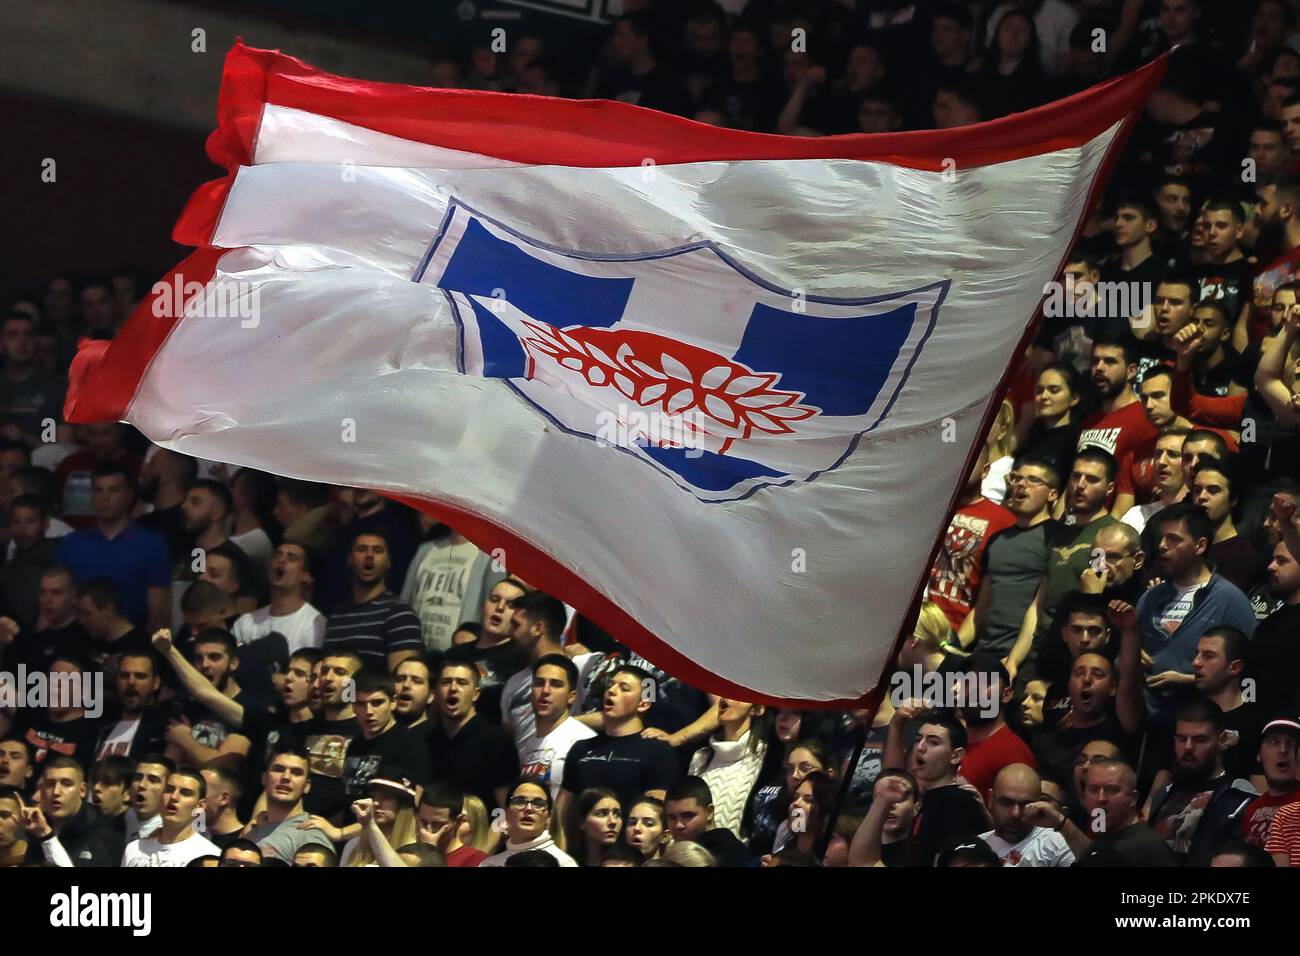 Olympiacos v Crvena zvezda facts, UEFA Champions League